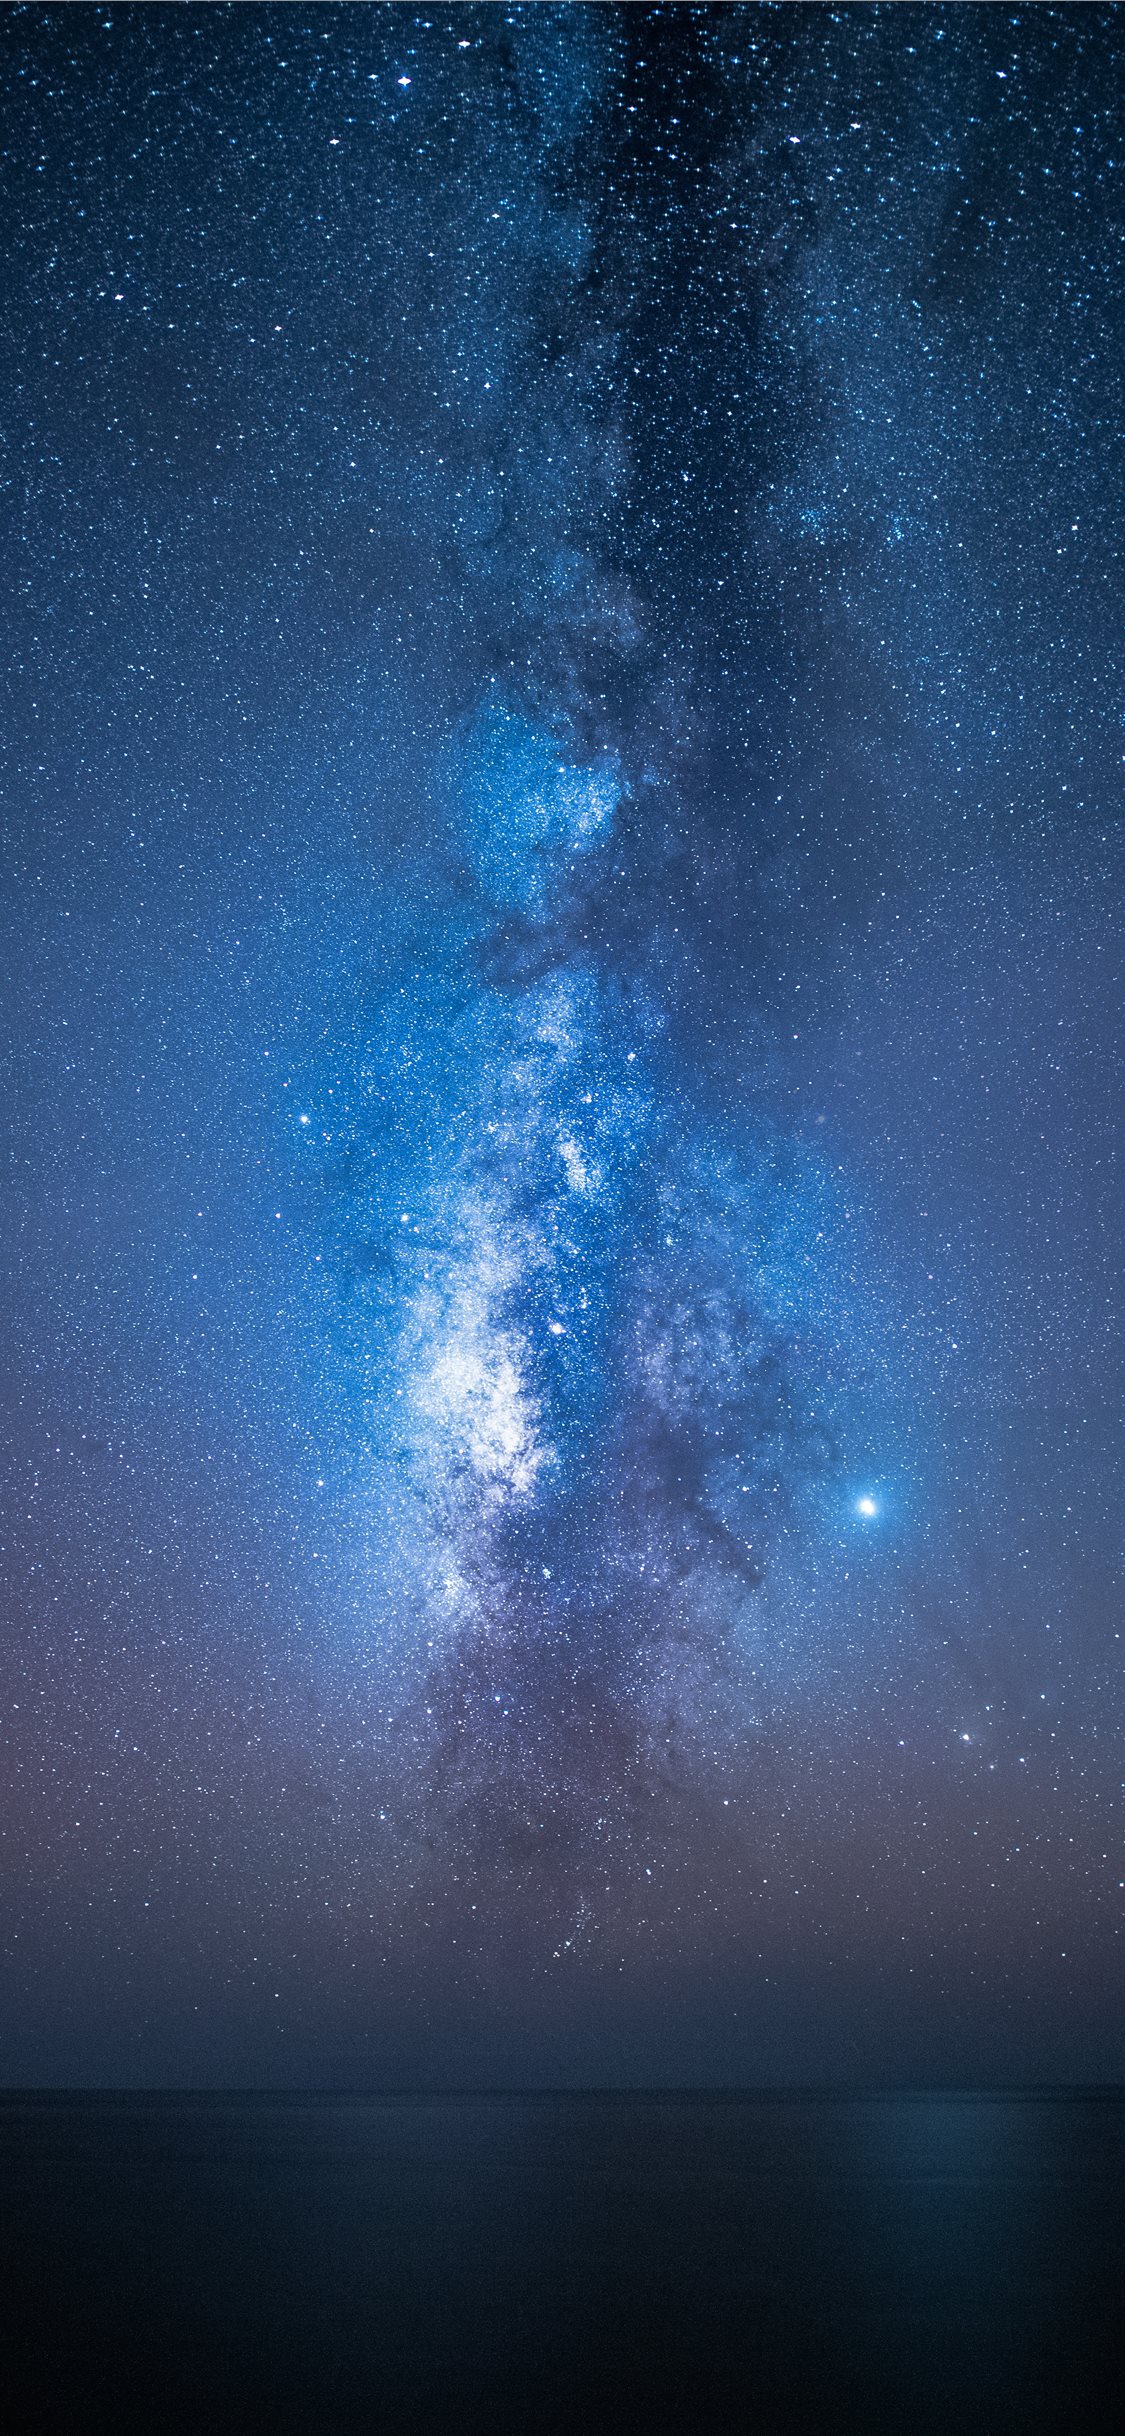 Bức ảnh nền với tầm nhìn toàn cảnh về dãy sao trong dải Ngân Hà sẽ làm bạn say đắm vào vẻ đẹp bình yên và cảm nhận rõ hơn sự nhỏ bé của mình trước vũ trụ vô tận.